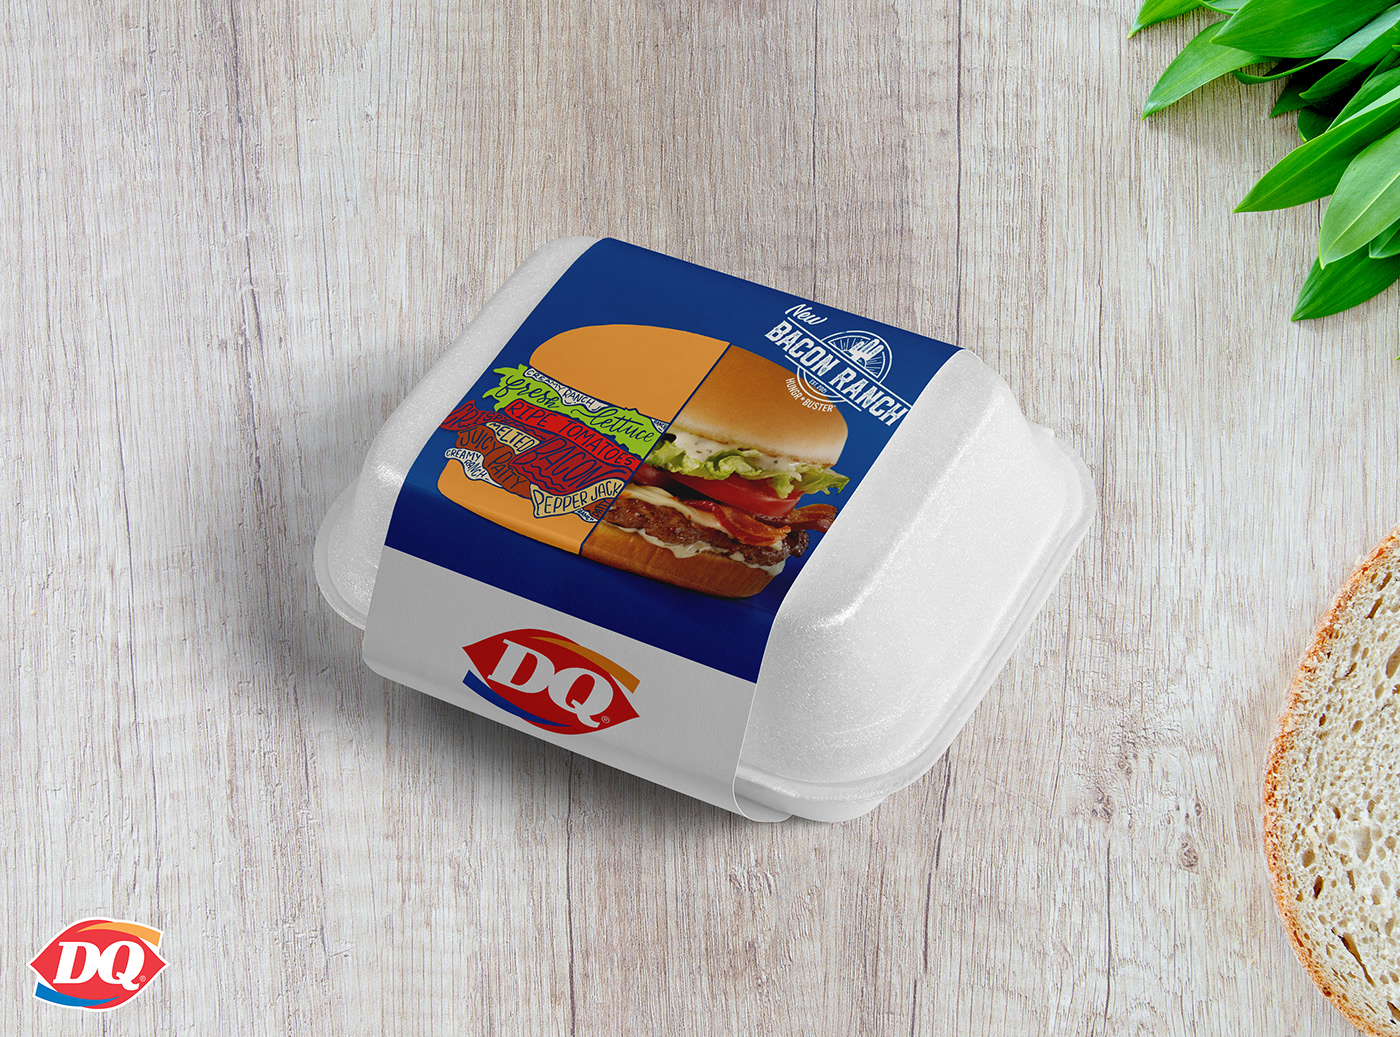 design Graphic Designer visual identity Brand Design Adobe Photoshop Advertising  brand identity burger restaurant Dairy Queen